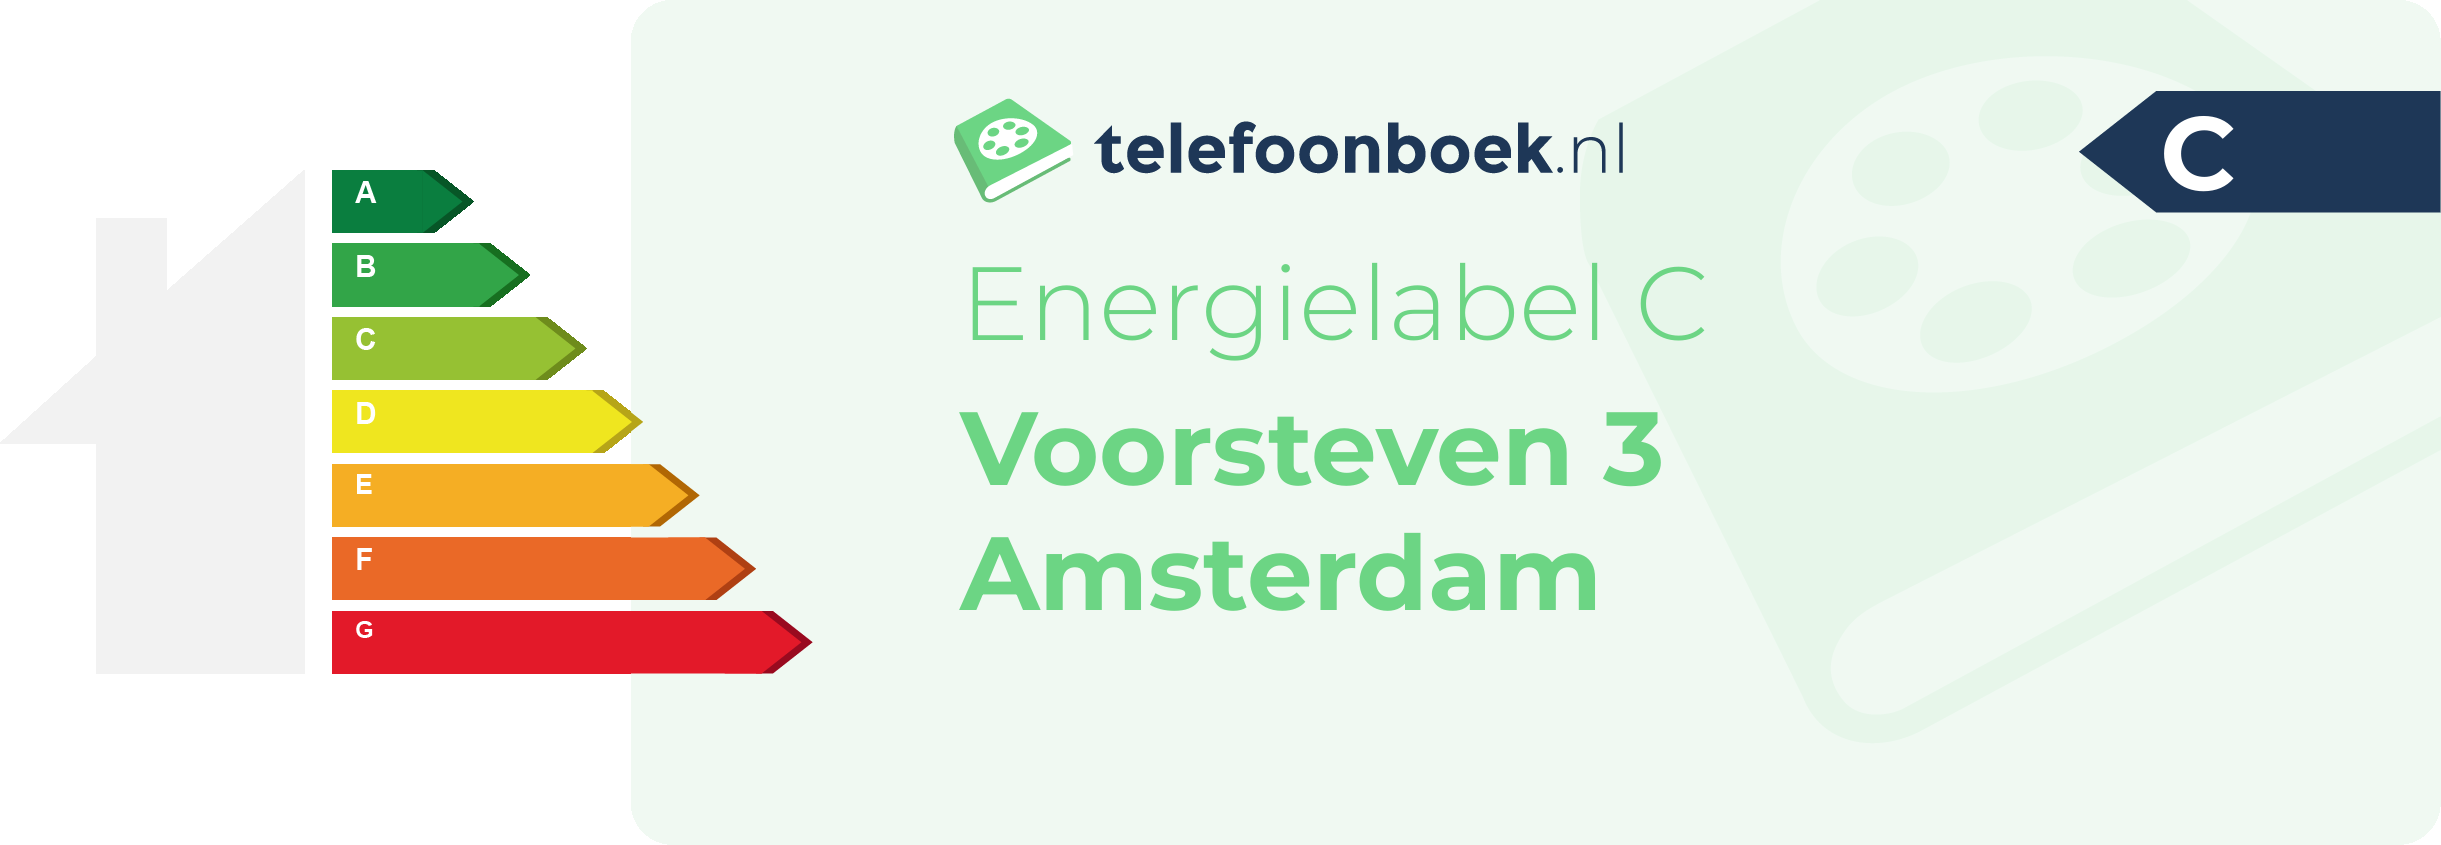 Energielabel Voorsteven 3 Amsterdam